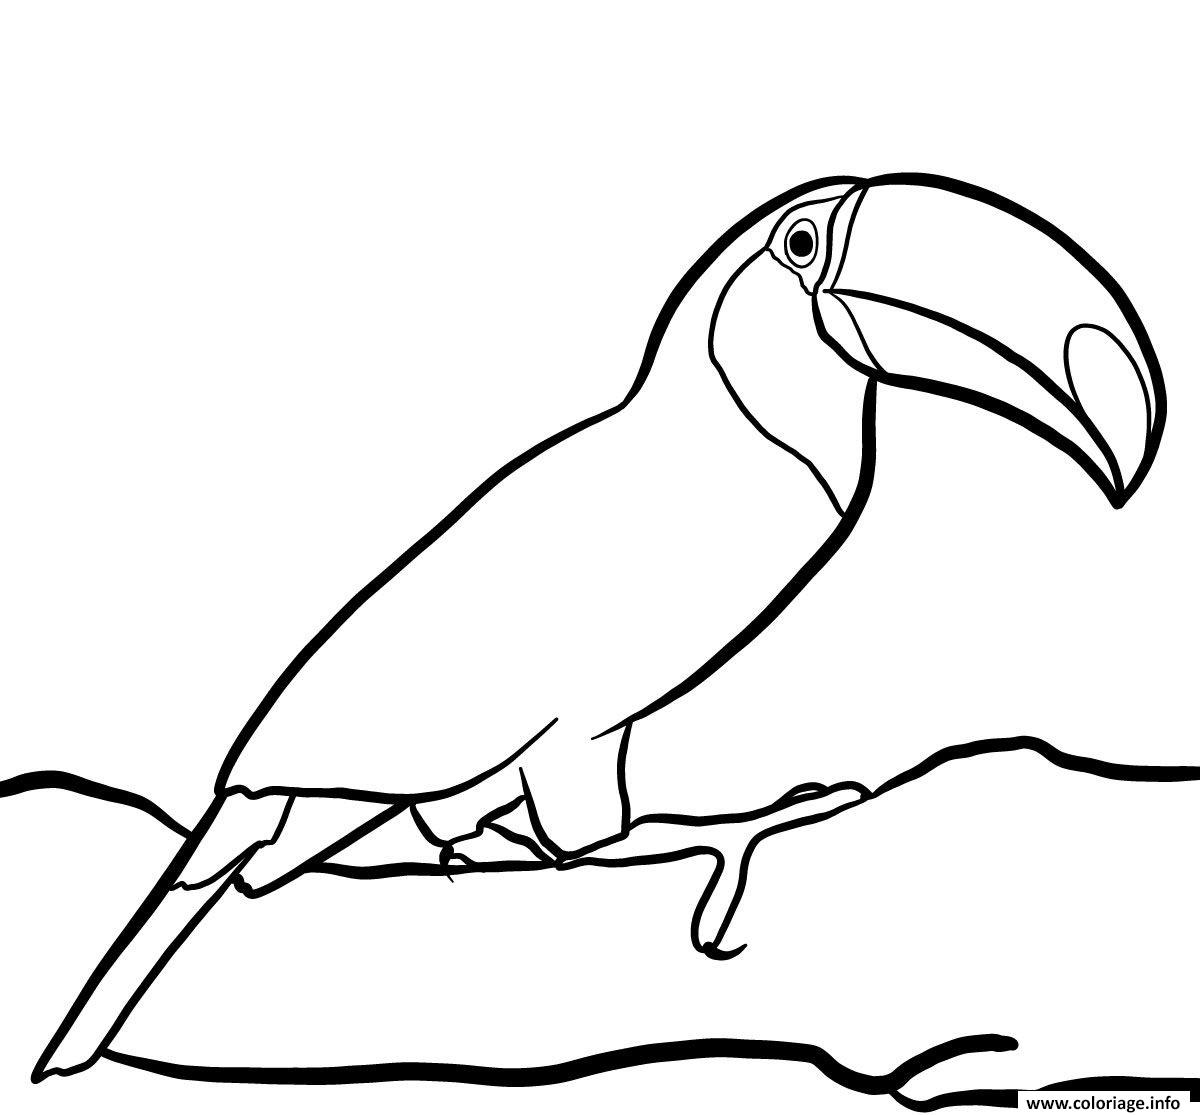 Dessin oiseau toucan toco vit dans la foret tropicale Coloriage Gratuit à Imprimer